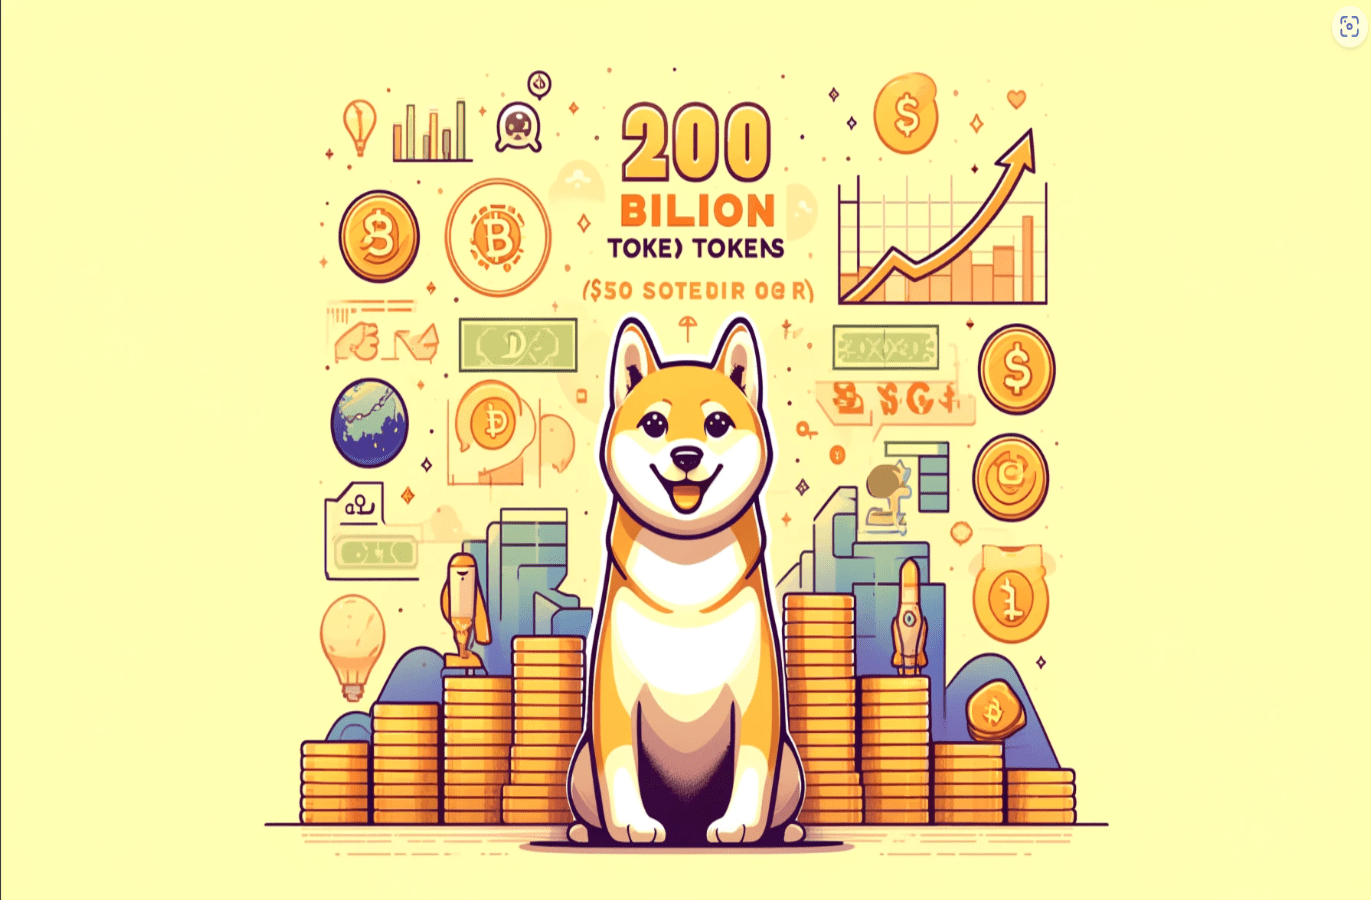 Dogeverse’s presale sells 200 Billion tokens: A $10 million story